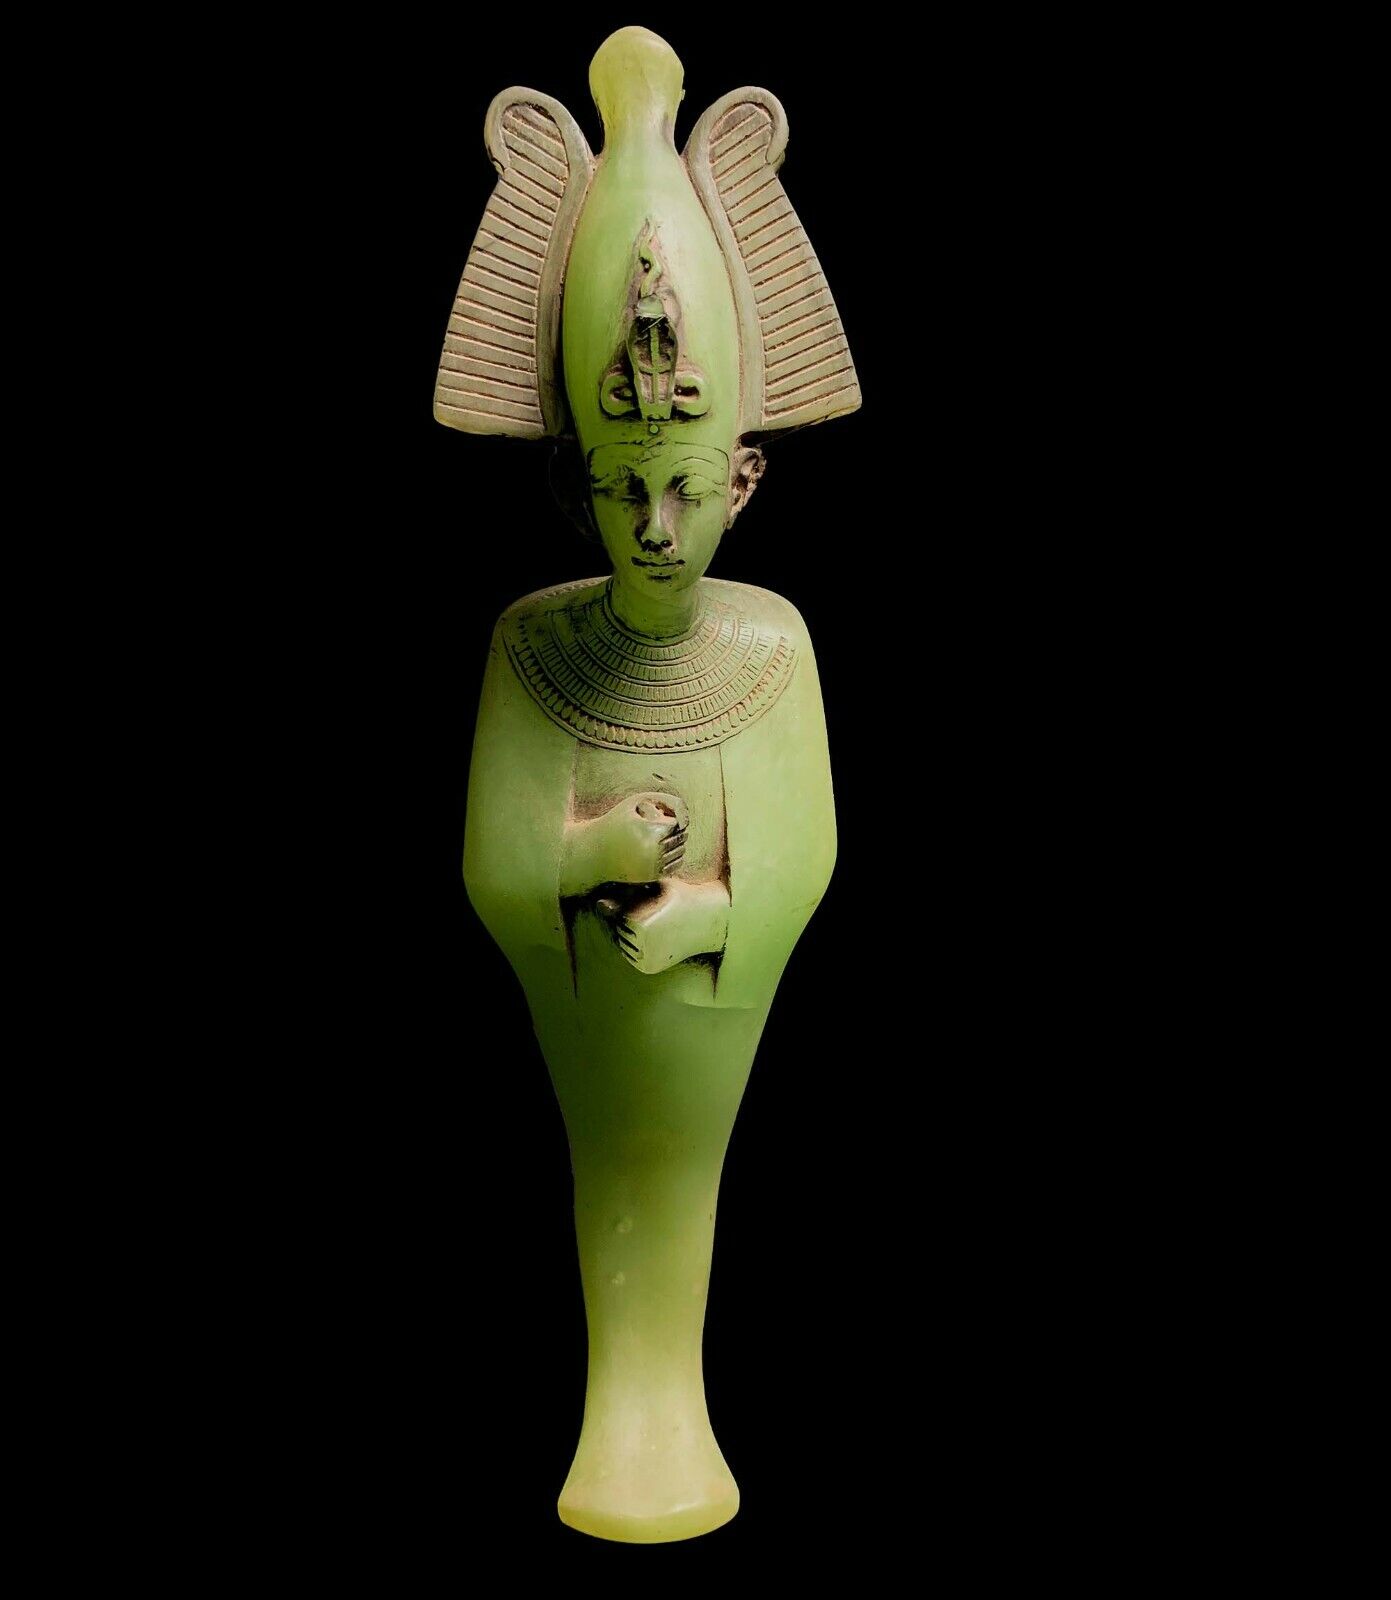 Marvelous Osiris Ushabti god of fertility, agriculture